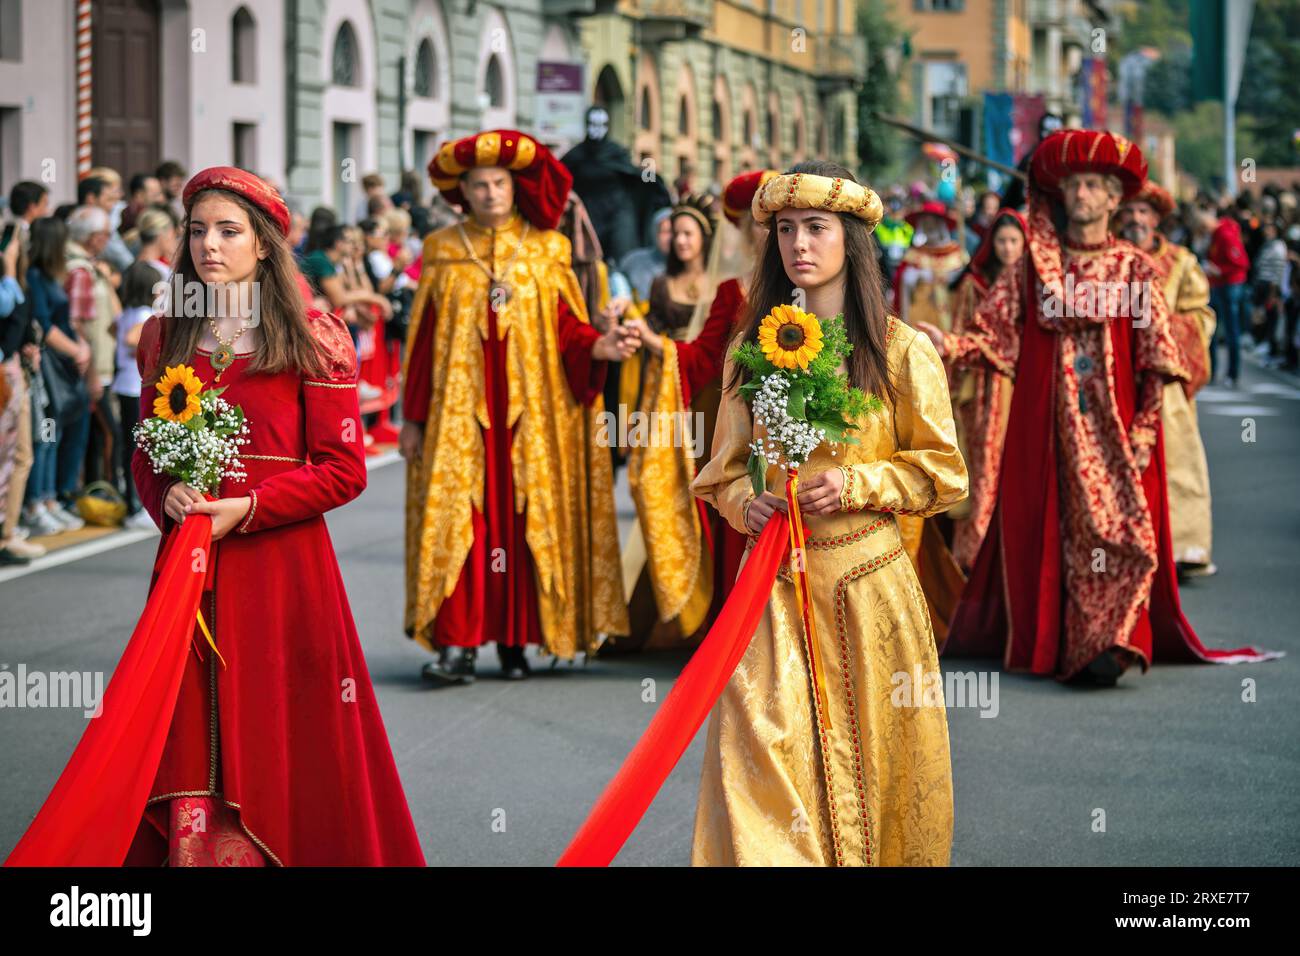 Processione in abiti storici alla Parata medievale - parte tradizionale delle celebrazioni durante l'annuale festival del Tartufo bianco ad Alba, Italia. Foto Stock